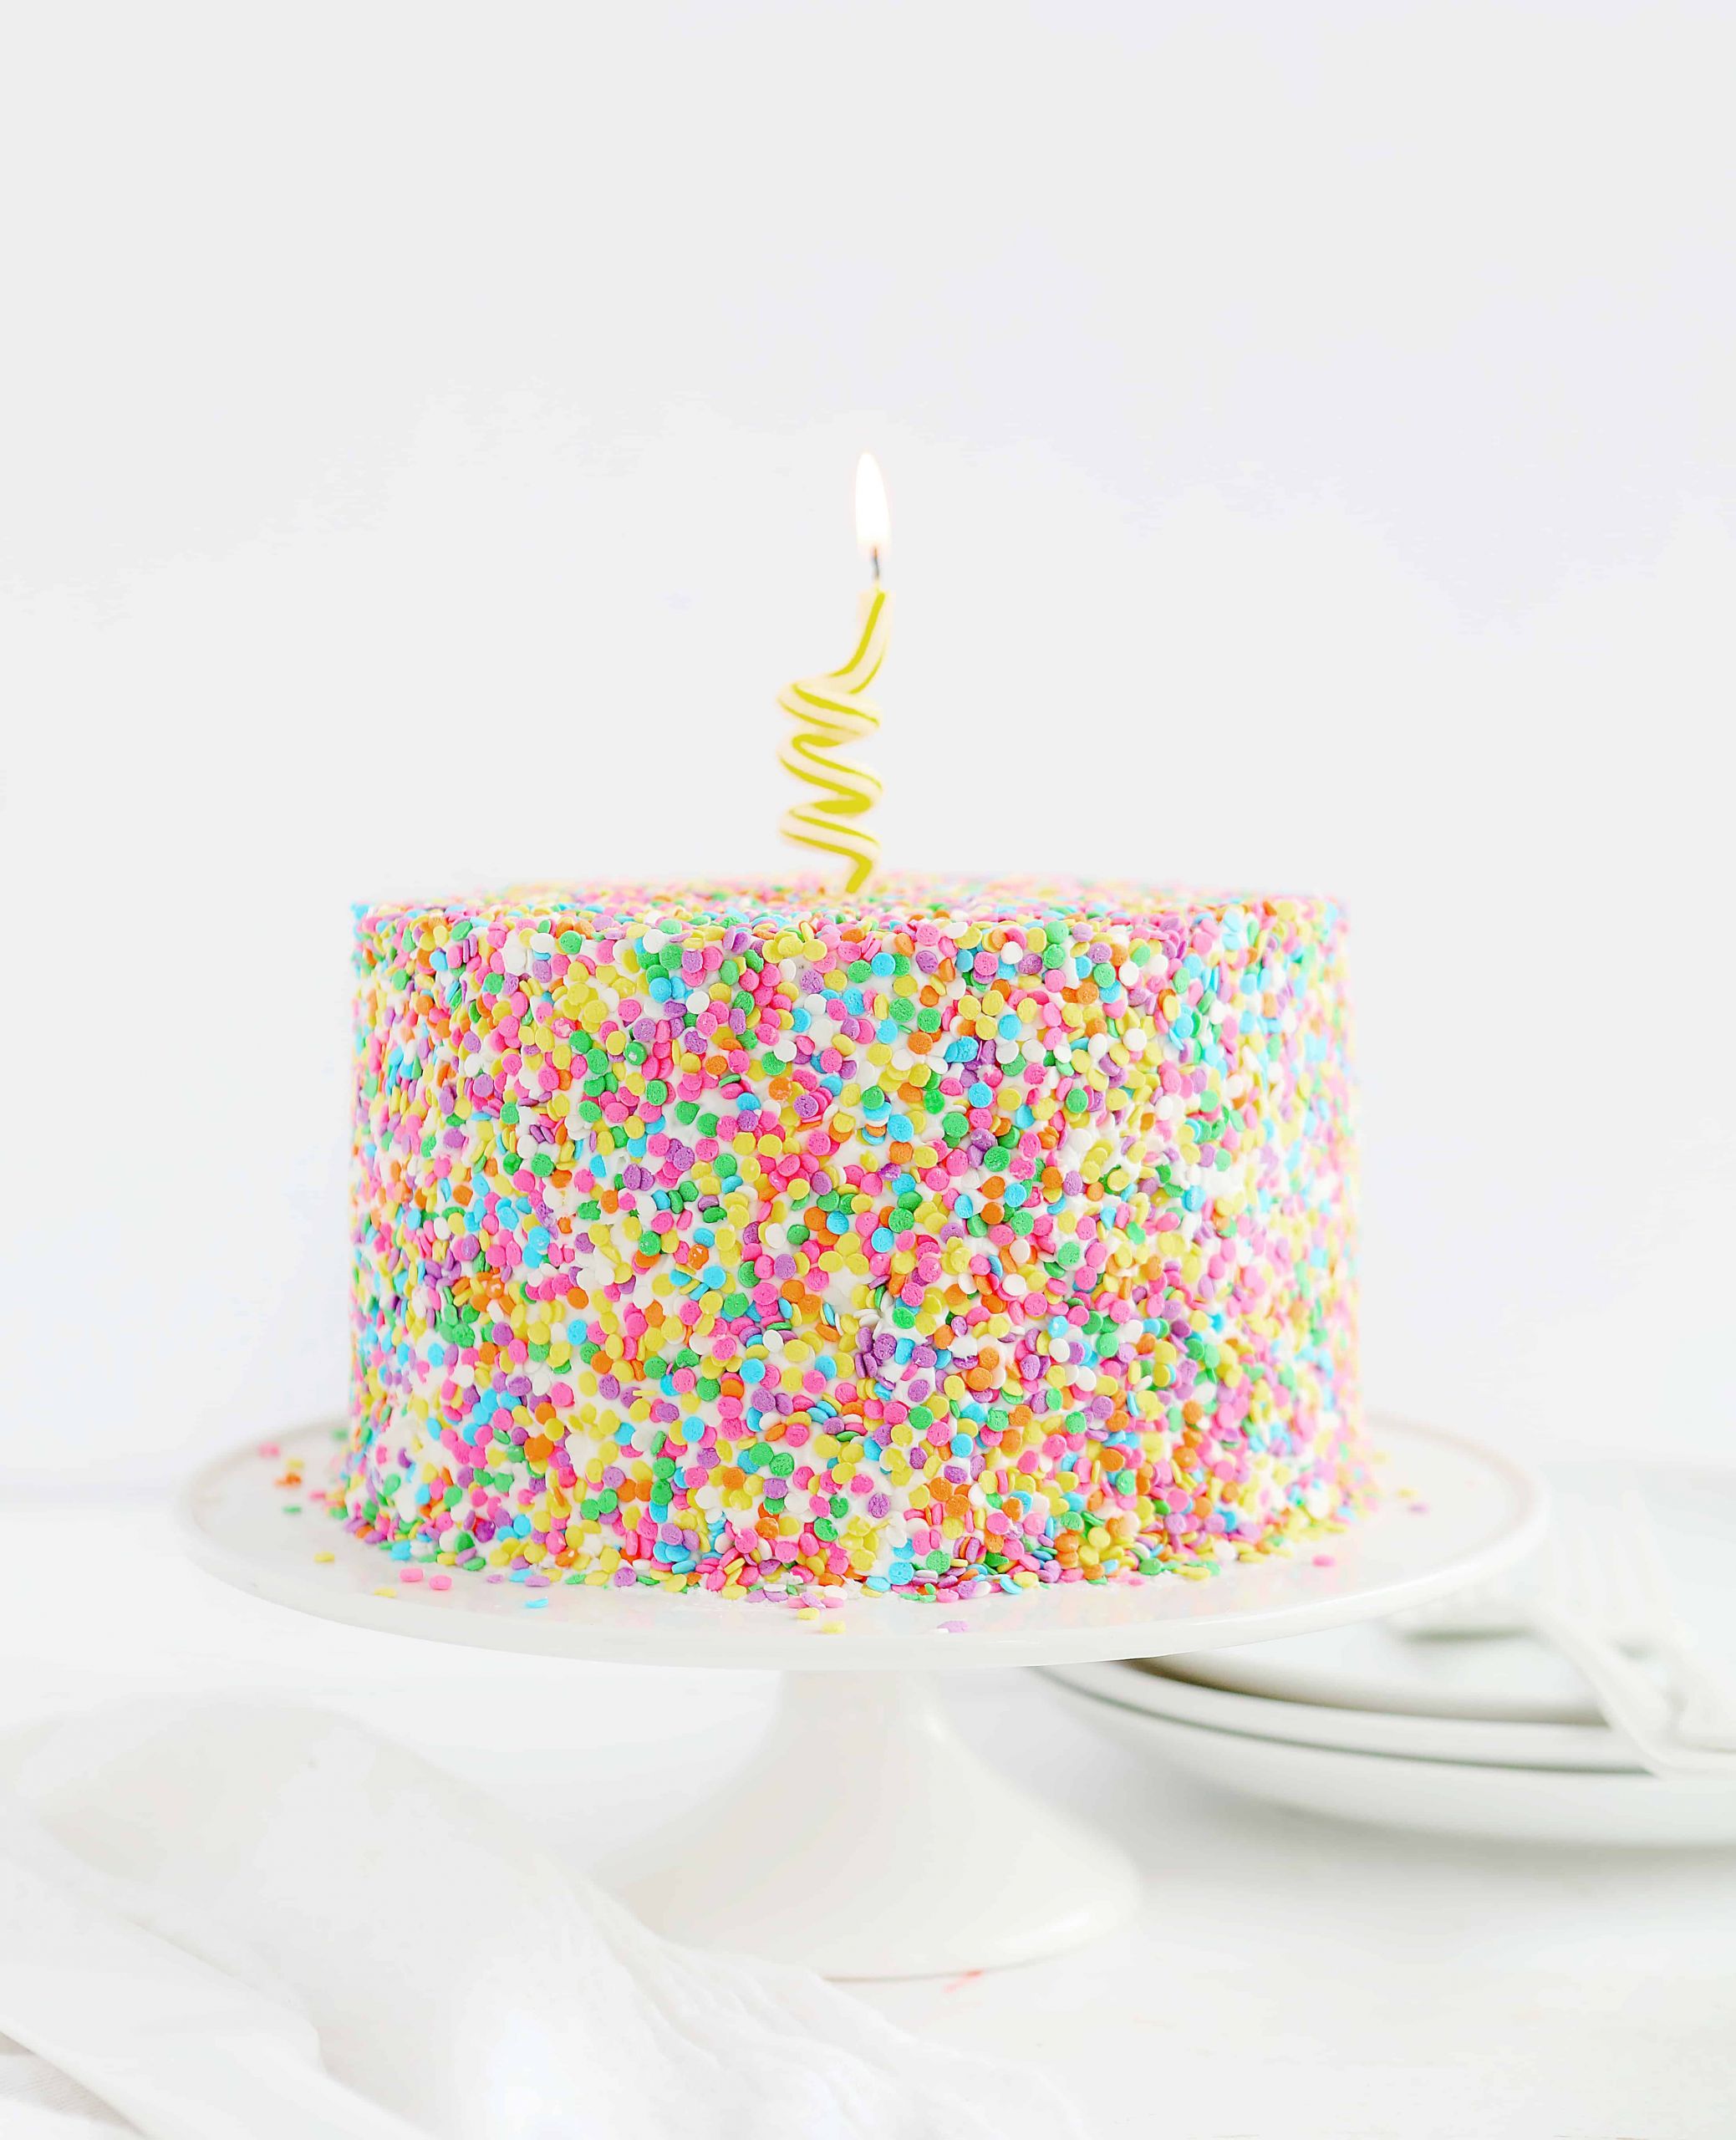 Decorating Birthday Cakes
 Cake Decorating i am baker